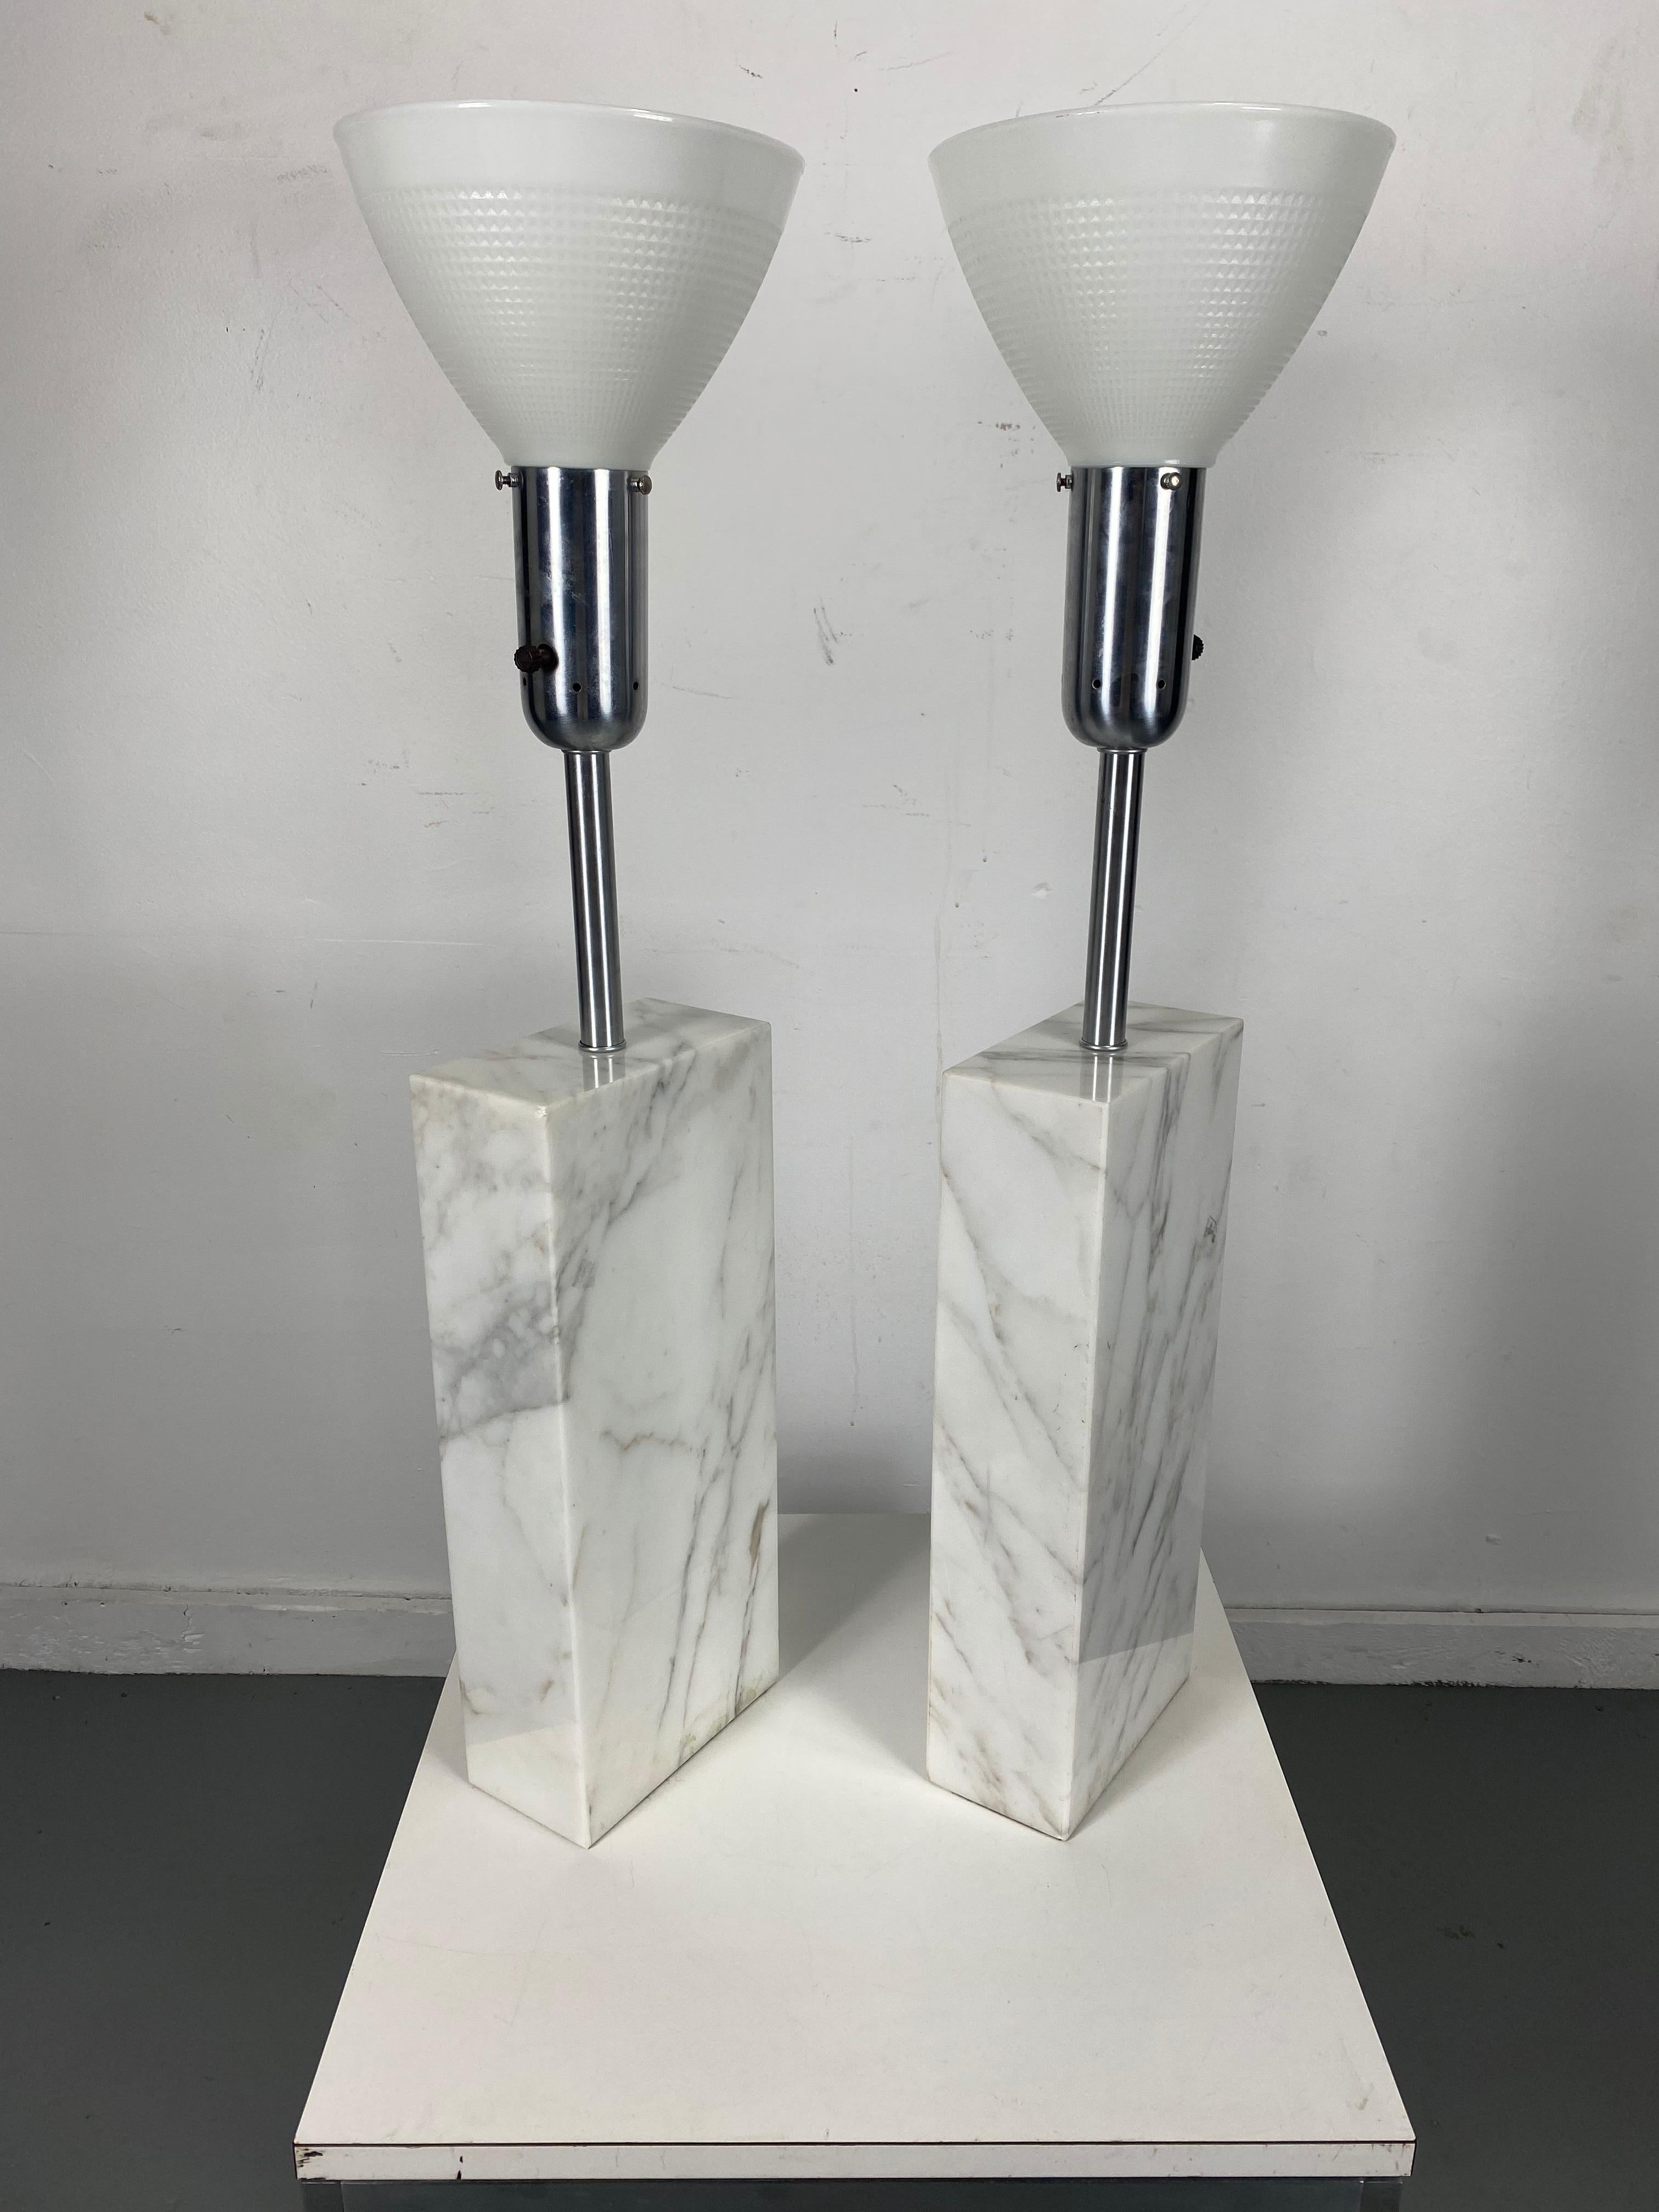 Erhebliche Elizabeth Kauffer zugeschriebene Nessen Studios massive weiße Carrara-Marmor & gebürstetem Stahl Lampen, 1950er Jahre. Mit einer massiven, architektonischen, weiß und grau geäderten rechteckigen Marmorsäule, gebürstetem Stahlhals und